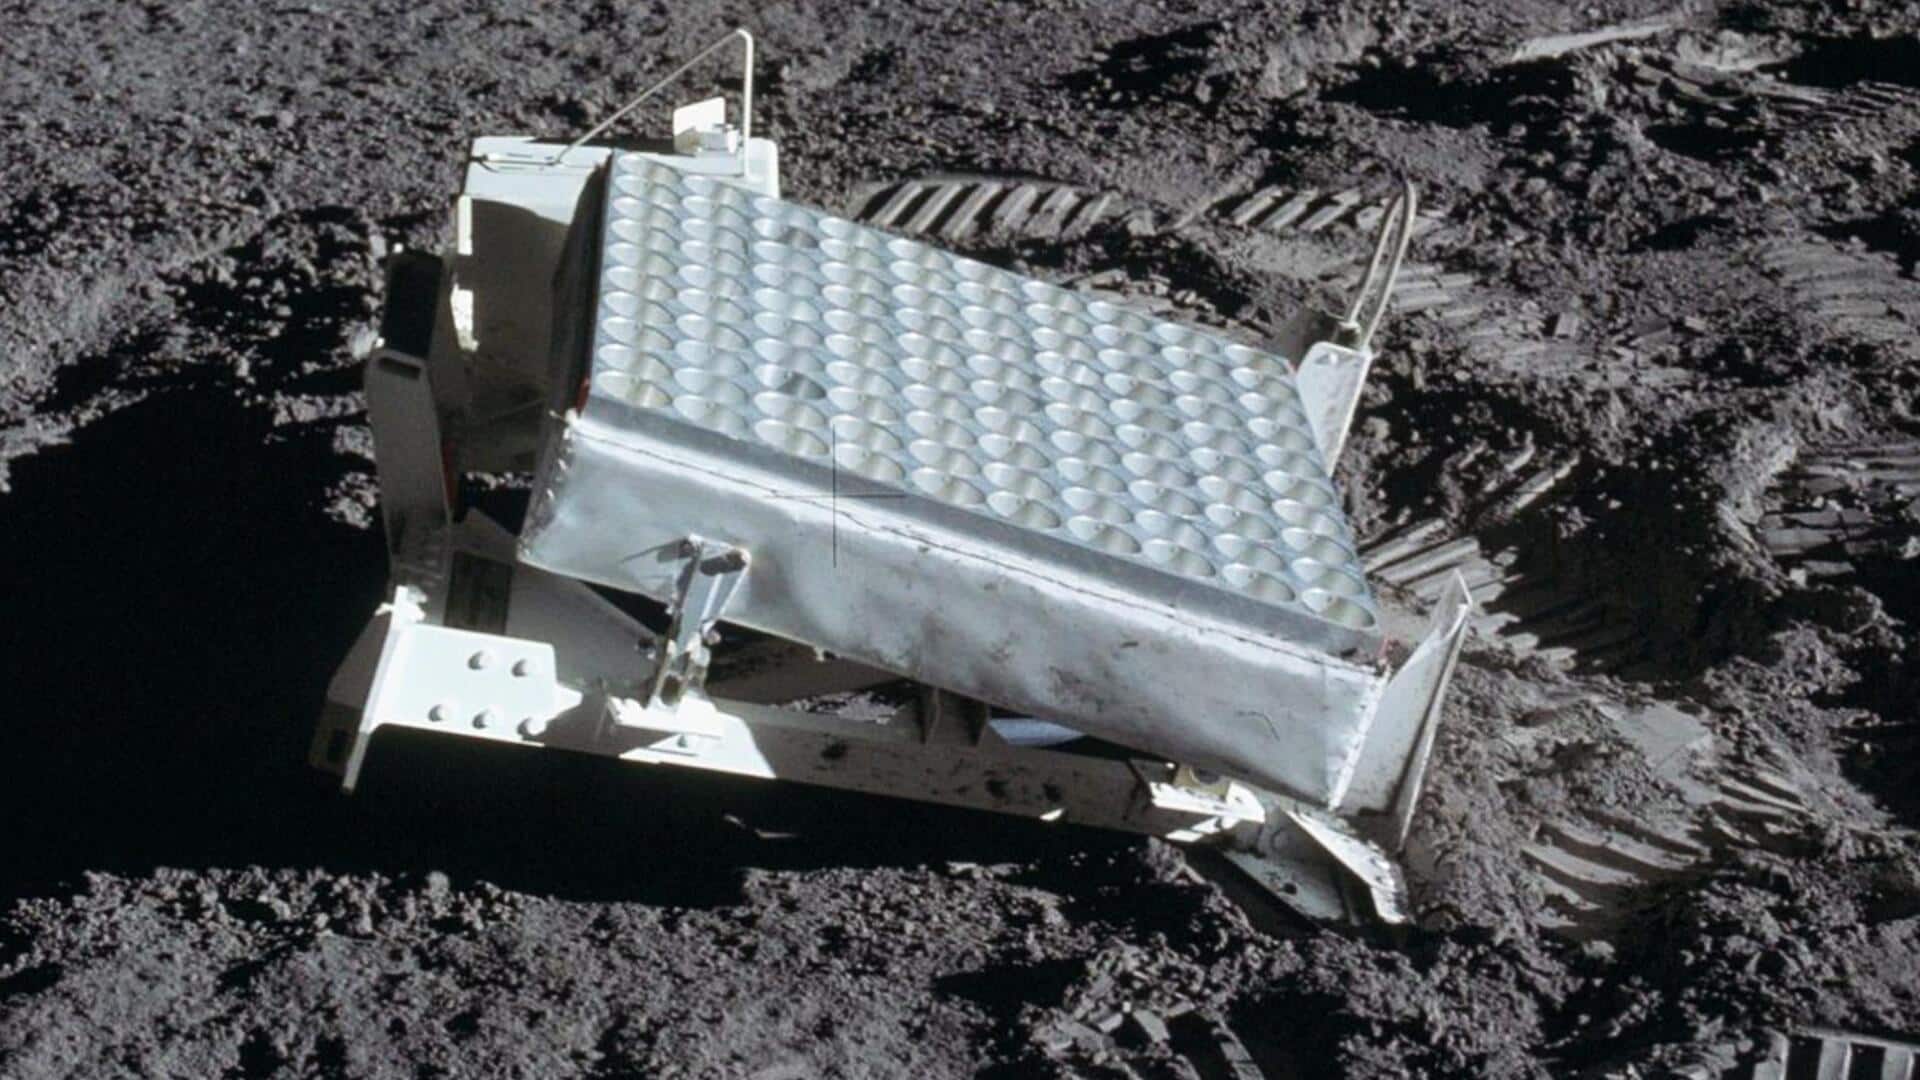 नील आर्मस्ट्रांग ने 54 साल पहले चांद पर रखा था ये टूल, अभी भी है चालू